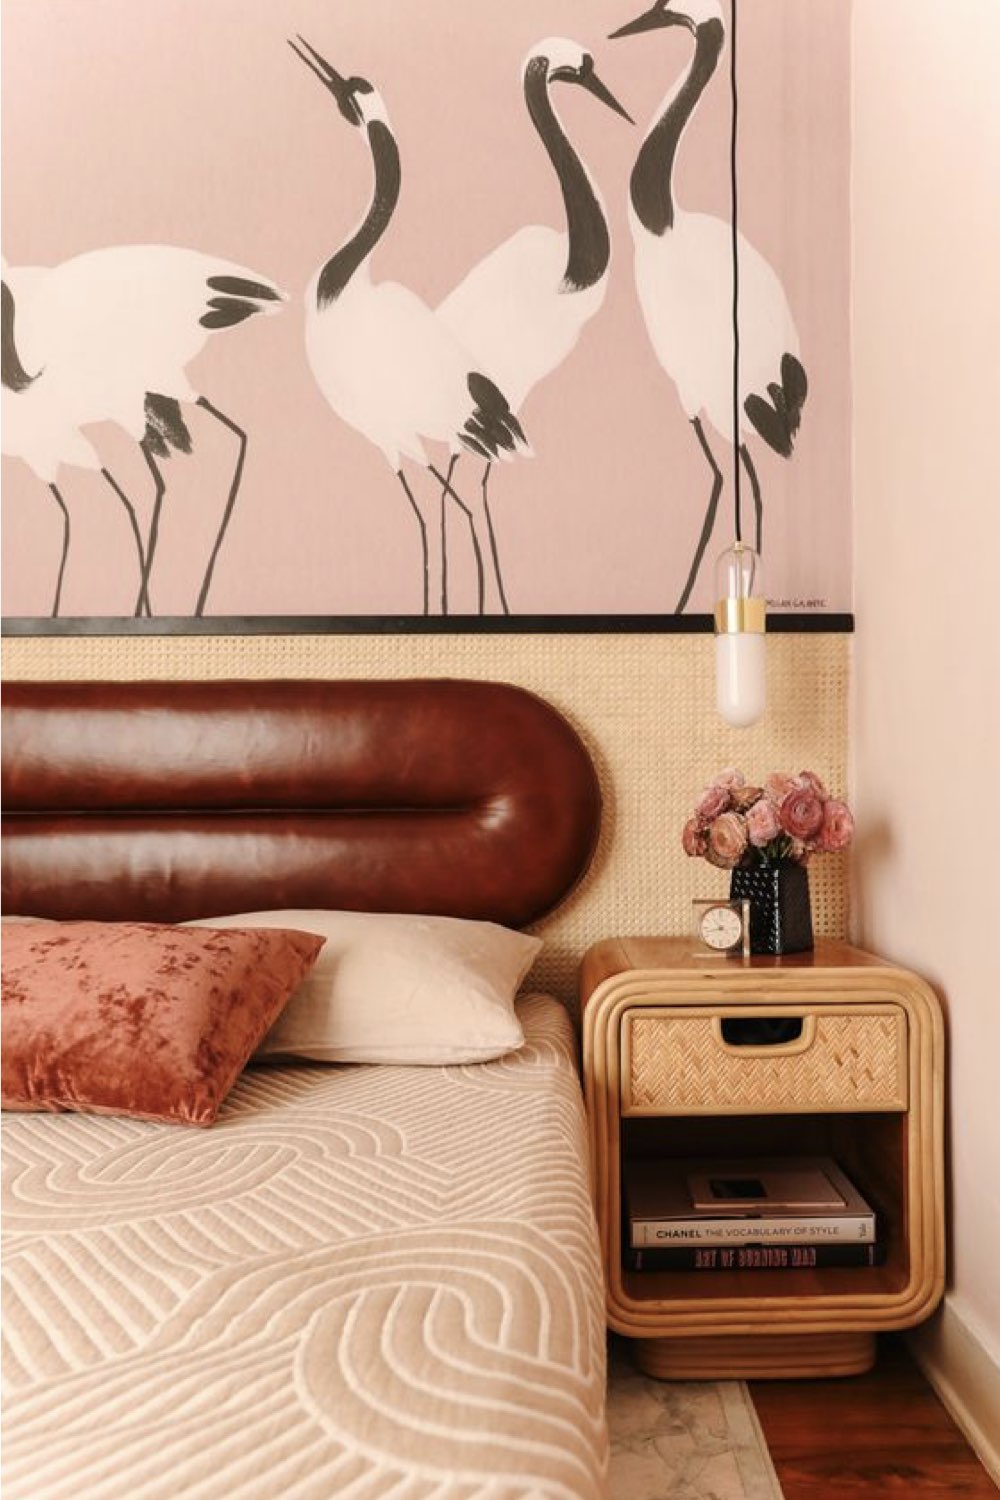 chambre adulte decoration reussie exemple soubassement en cannage papier peint rose avec motif oiseau ambiance féminine chic tête de lit cuir vintage